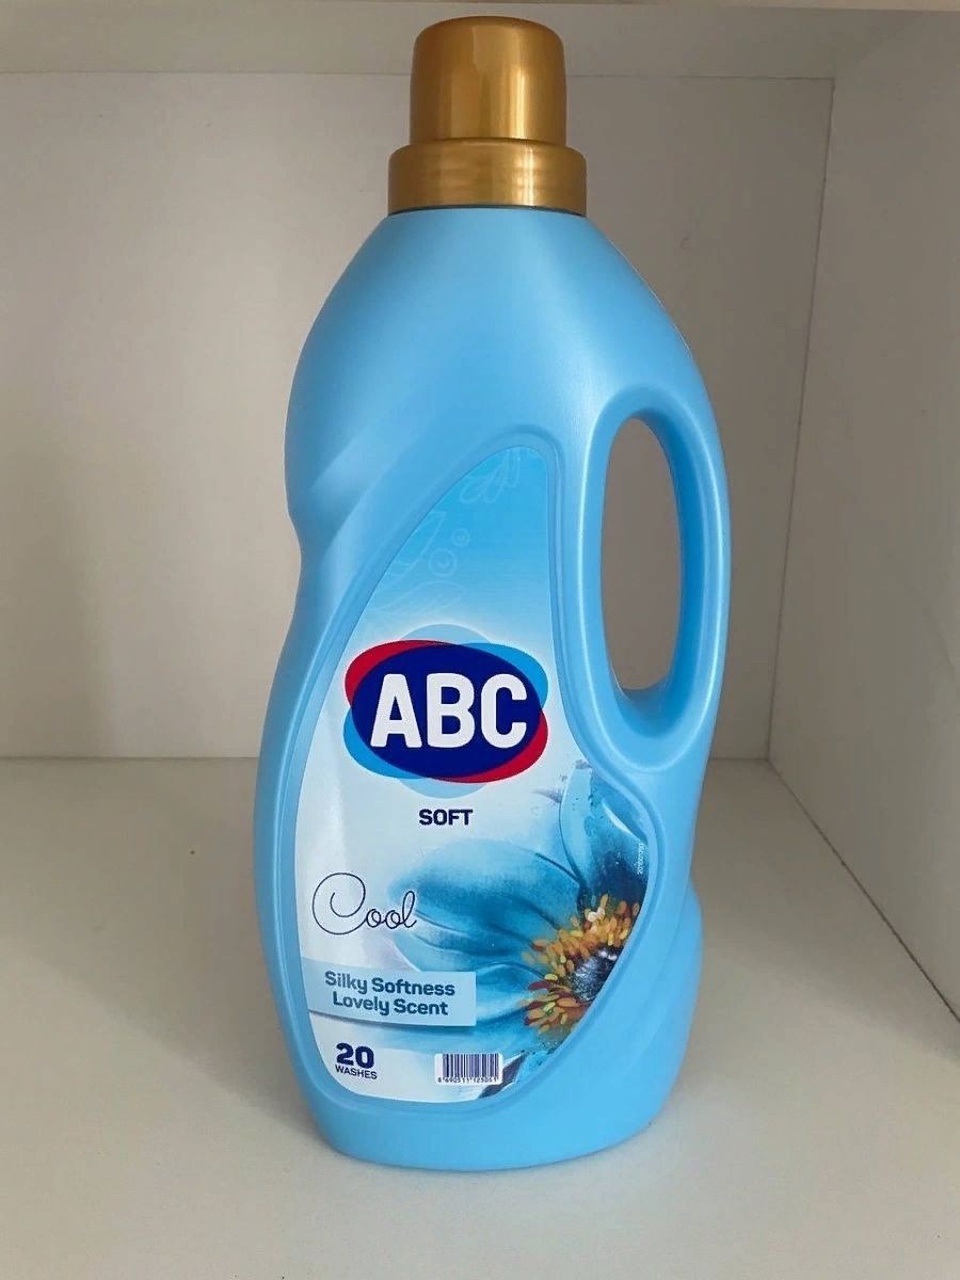 Кондиционер ABC soft Cool 2 литра - 360 ₽, заказать онлайн.